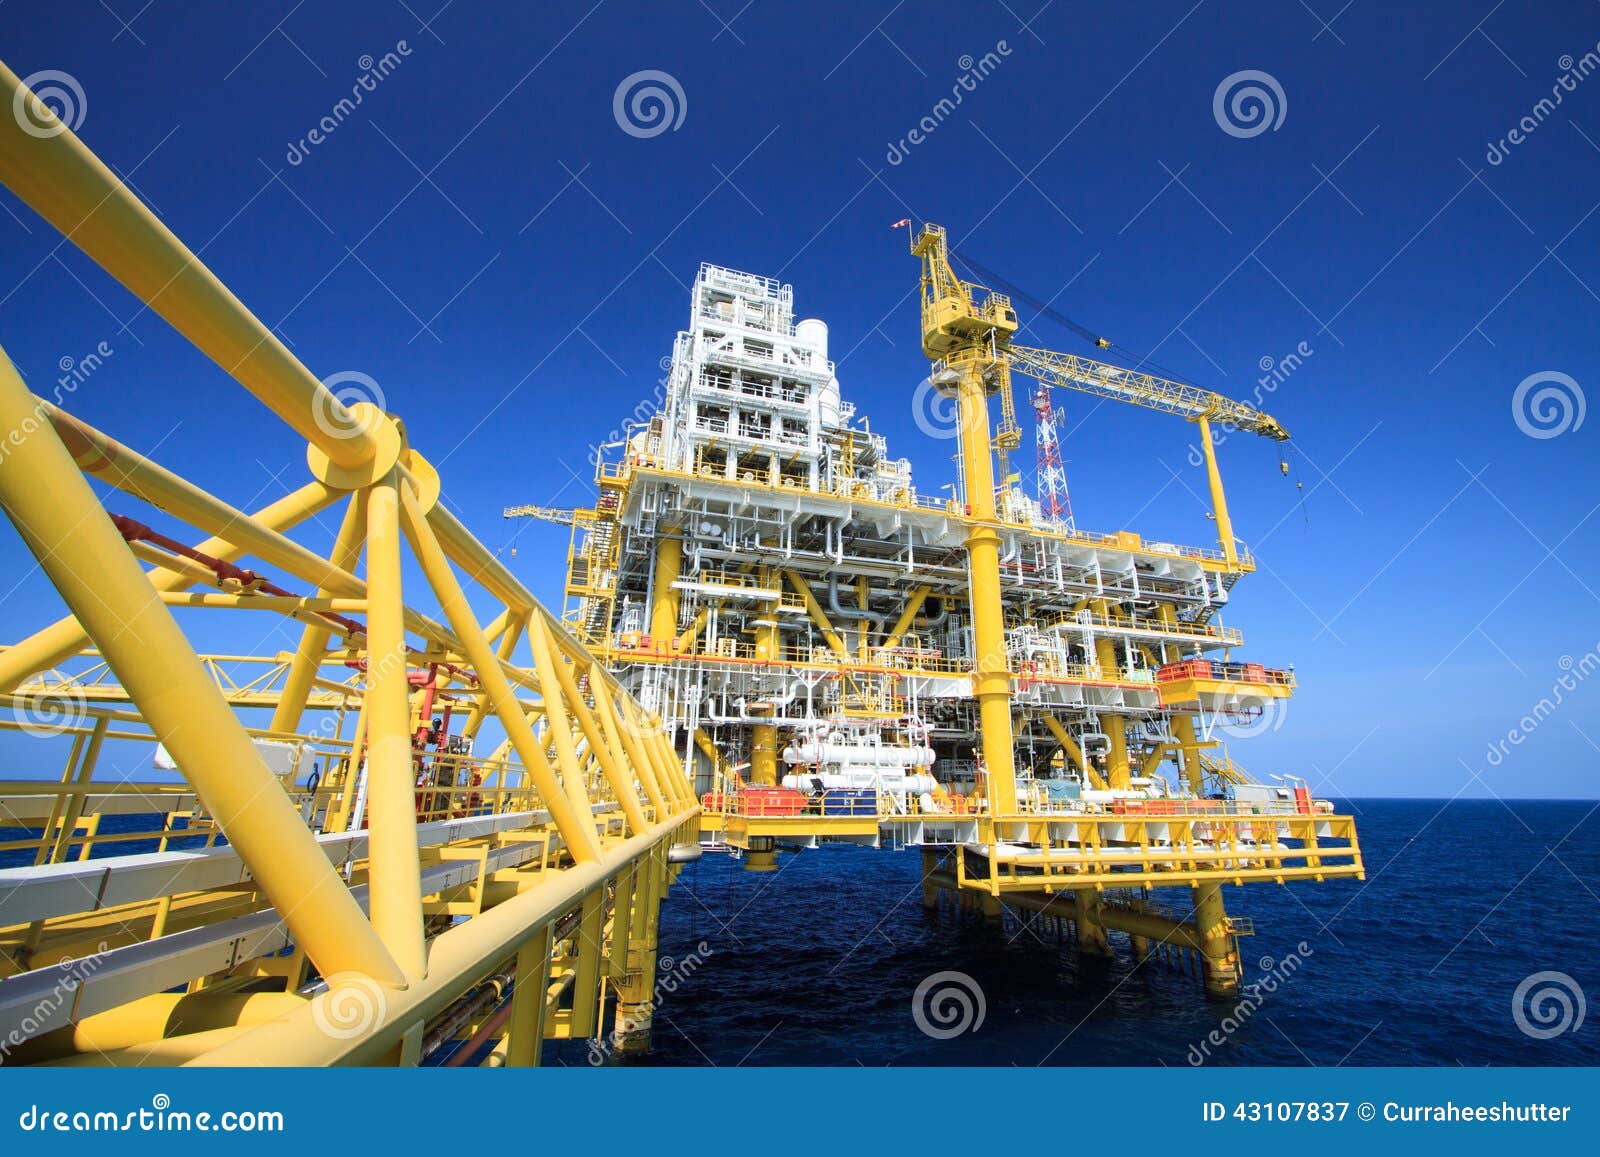 Plate-forme de pétrole et de gaz dans l'industrie en mer, processus de fabrication dans l'industrie pétrolière, l'usine de construction d'huile et l'industrie du gaz Travail lourd